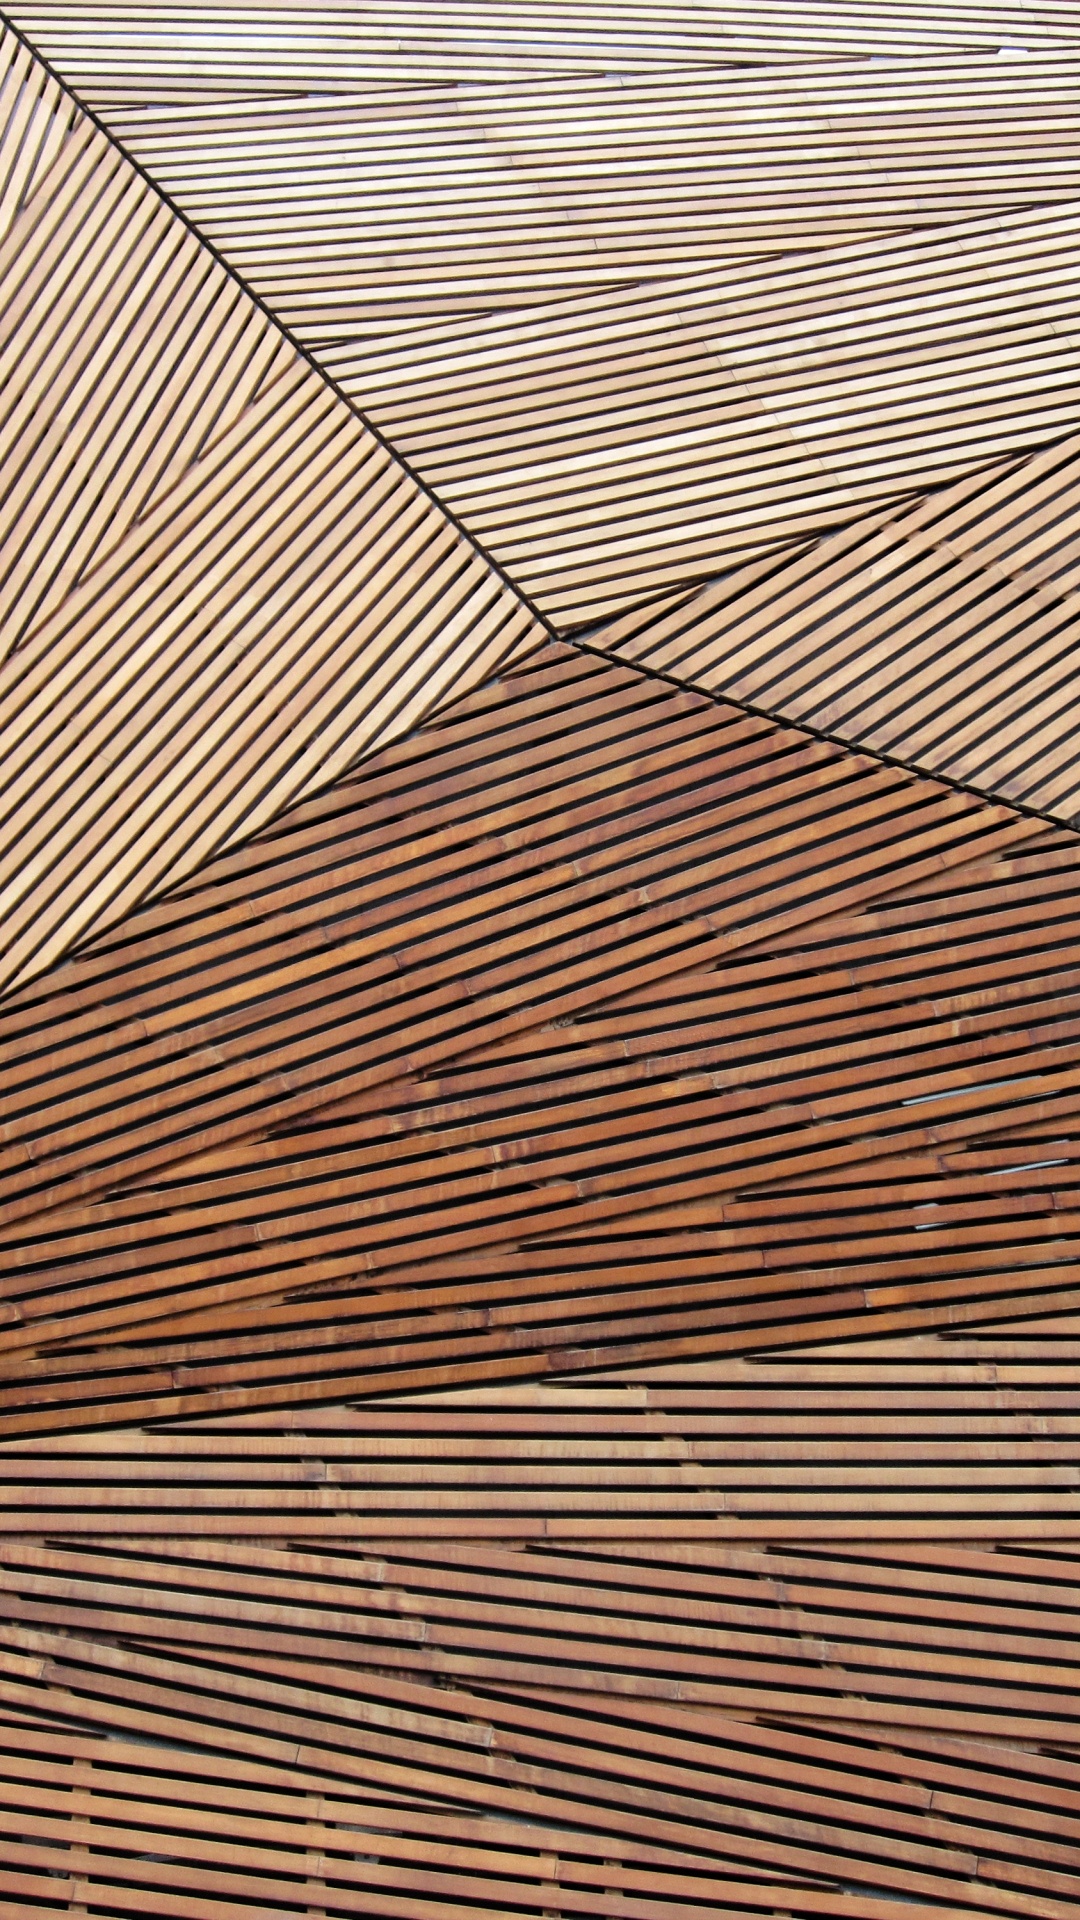 Textile Rayé Marron et Noir. Wallpaper in 1080x1920 Resolution